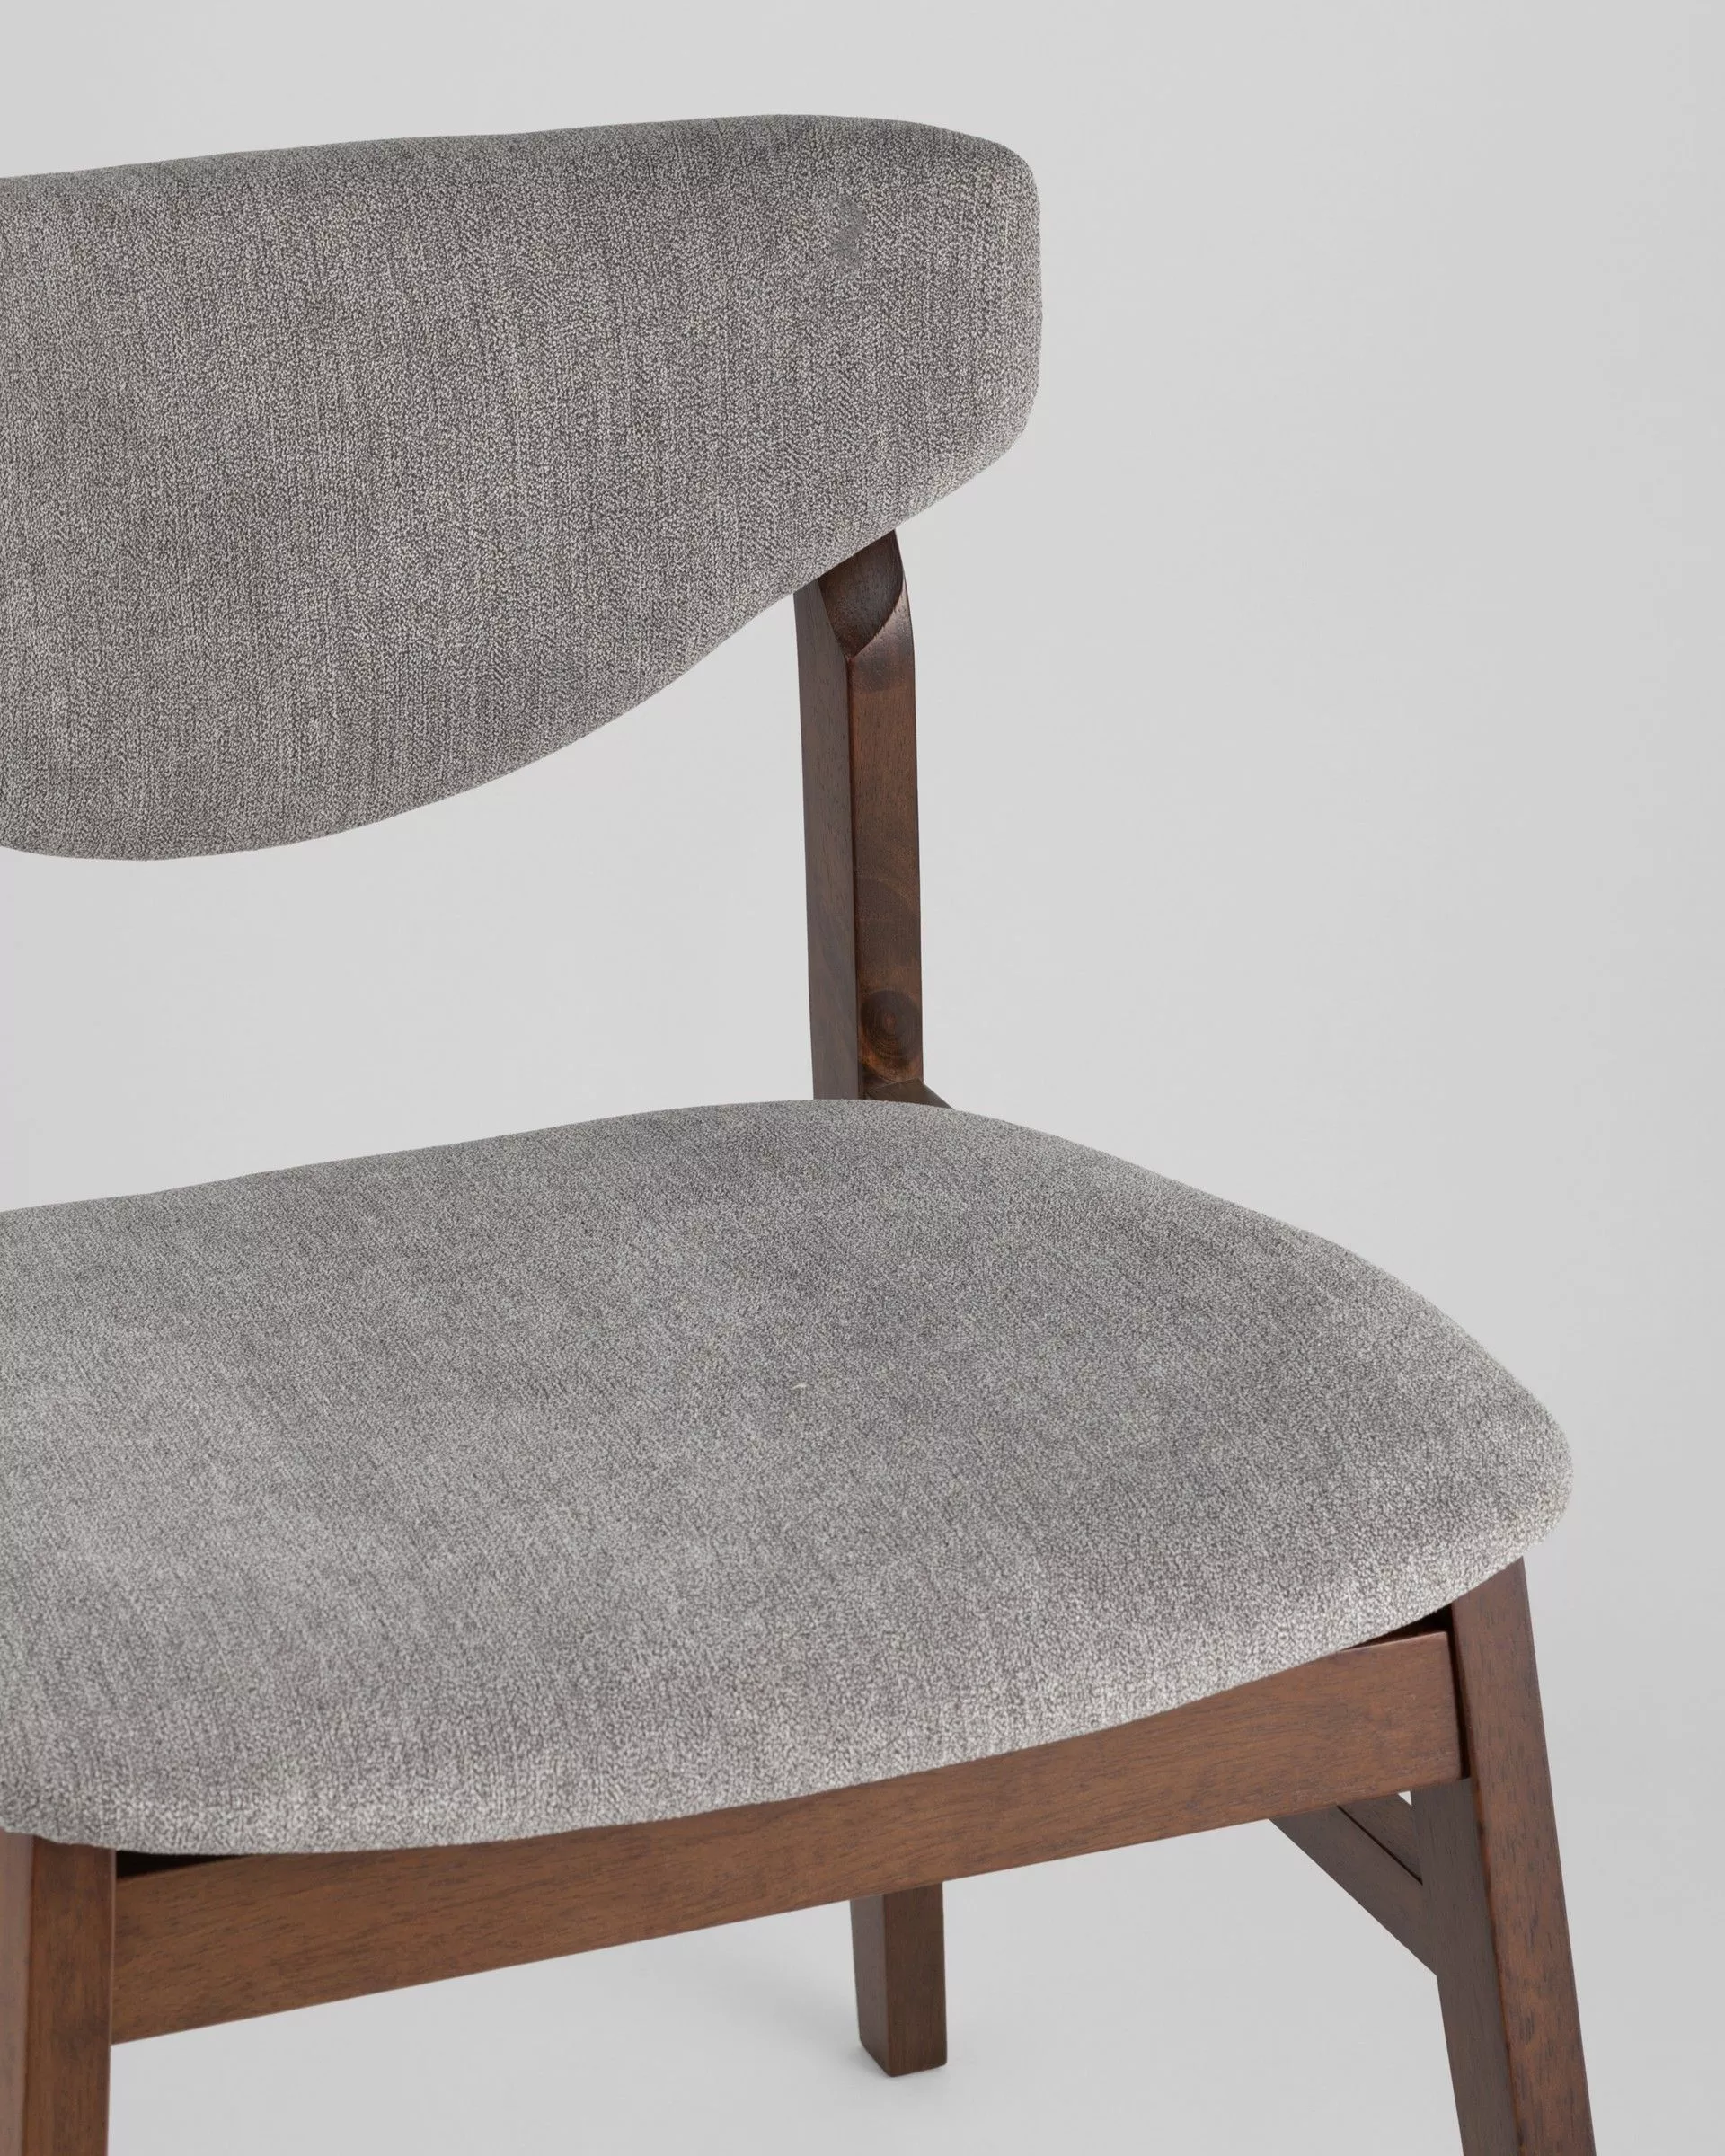 Комплект стульев RAGNAR серый 2 шт